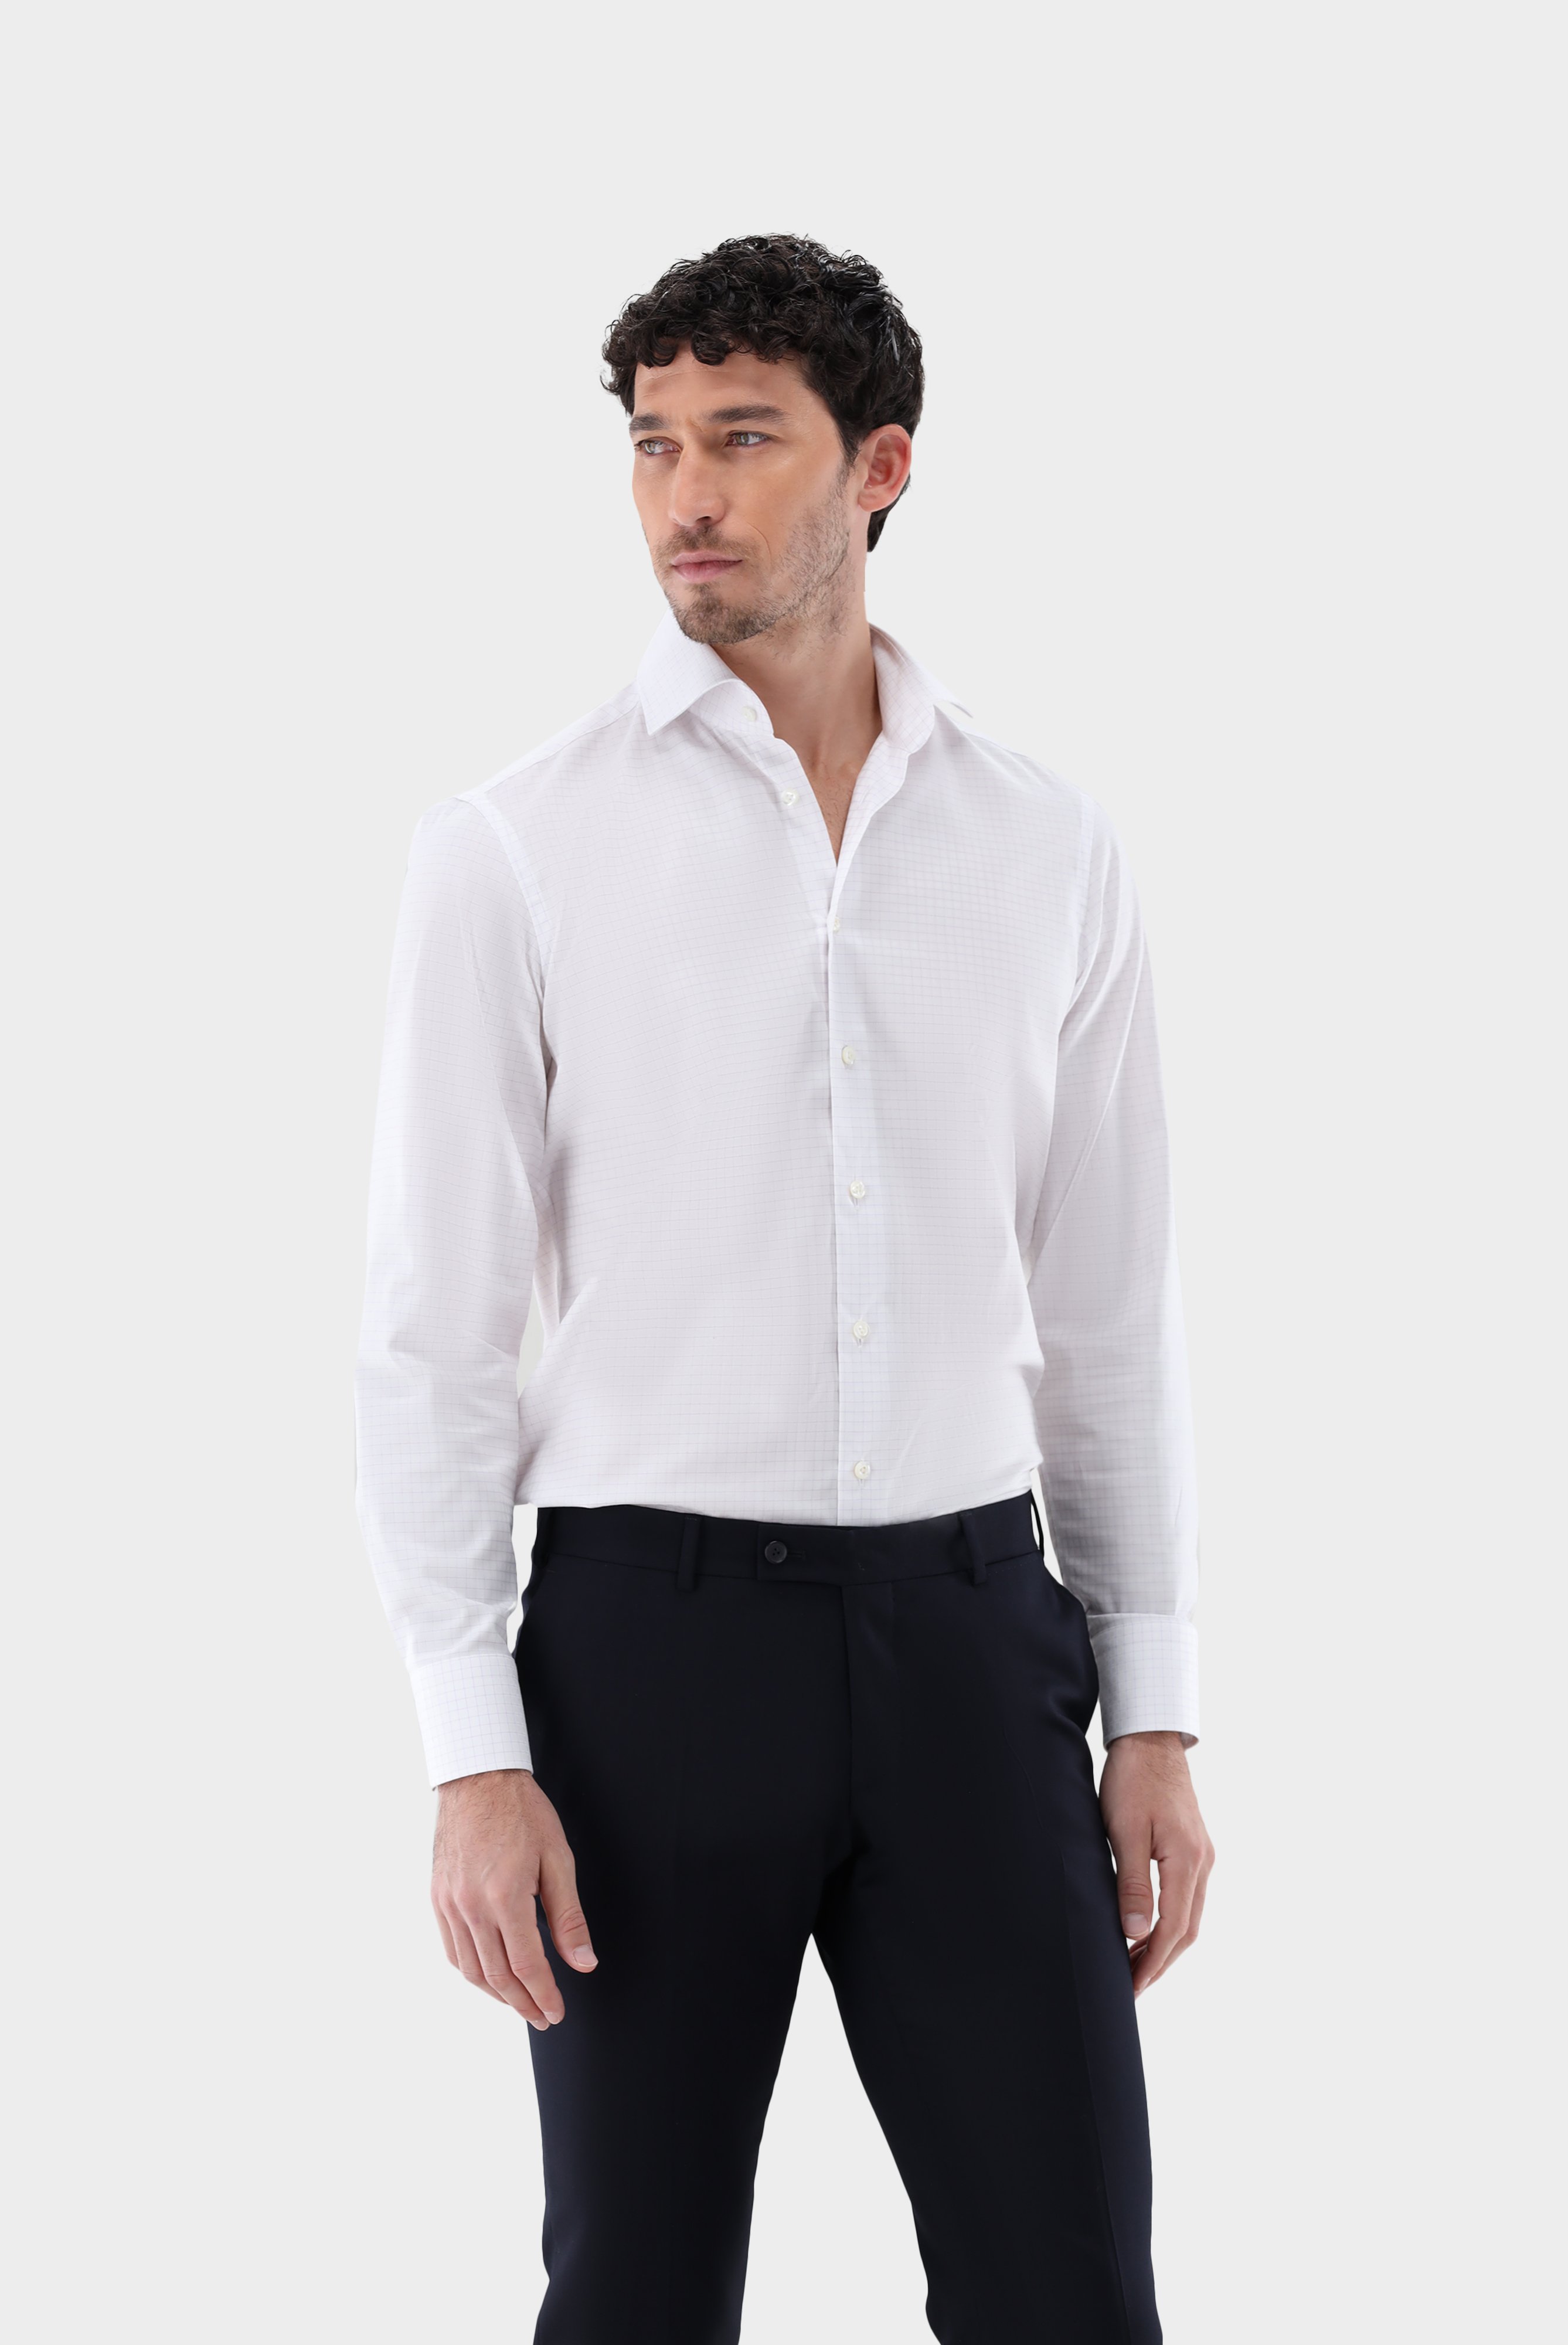 Bügelleichte Hemden+Kariertes Bügelfreies Twill-Hemd Tailor Fit+20.2020.BQ.161105.006.38